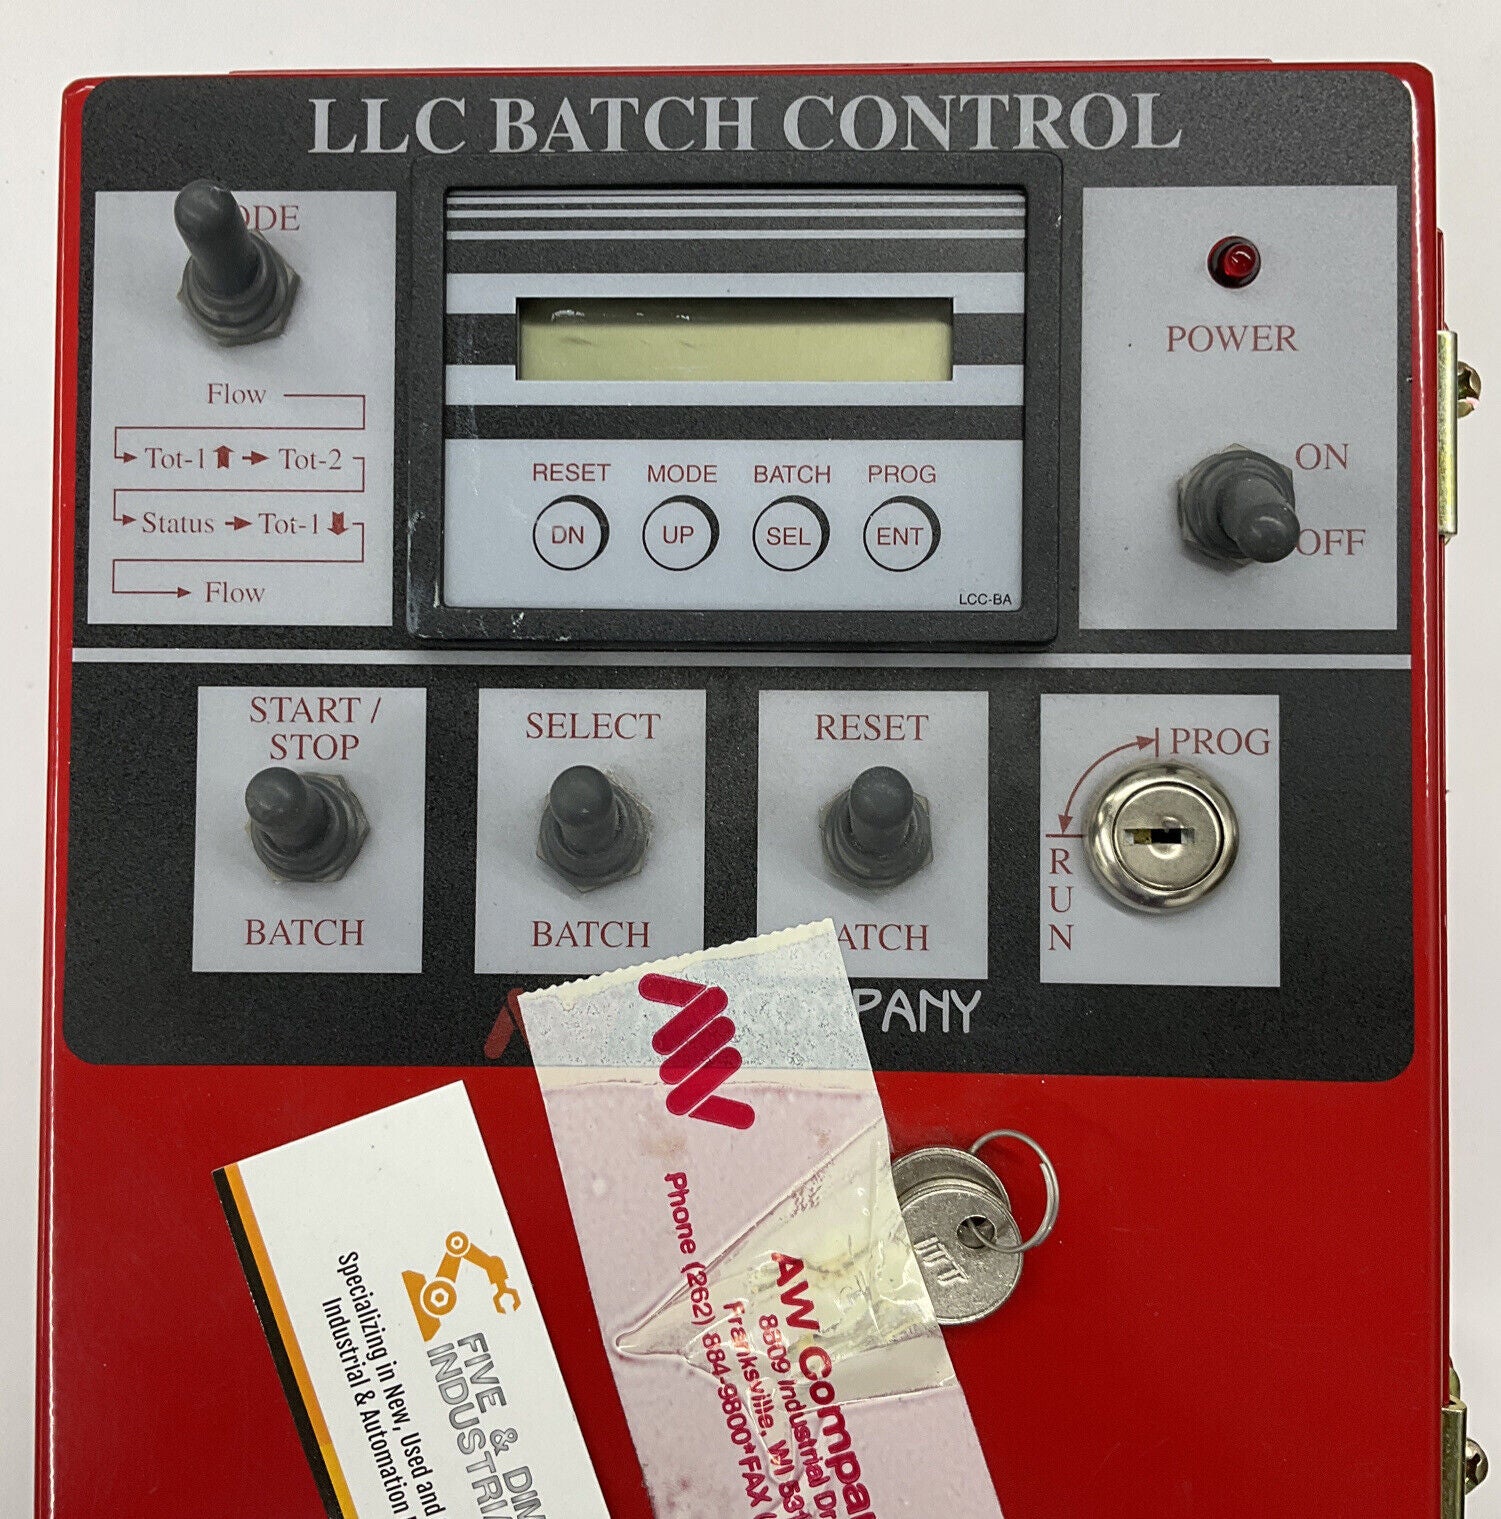 AW Company LLC-BA Flowmeter Batch Control Ver. 1.17 120VAC (OV115) - 0